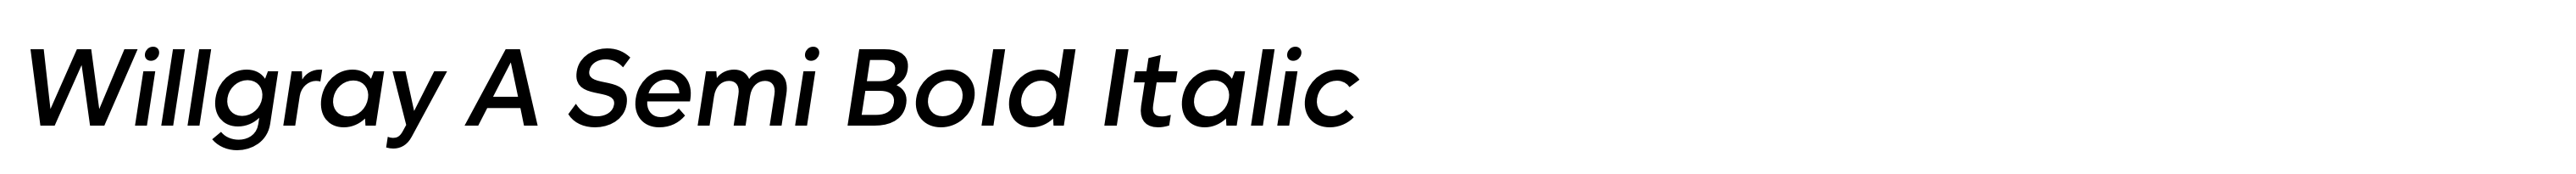 Willgray A Semi Bold Italic